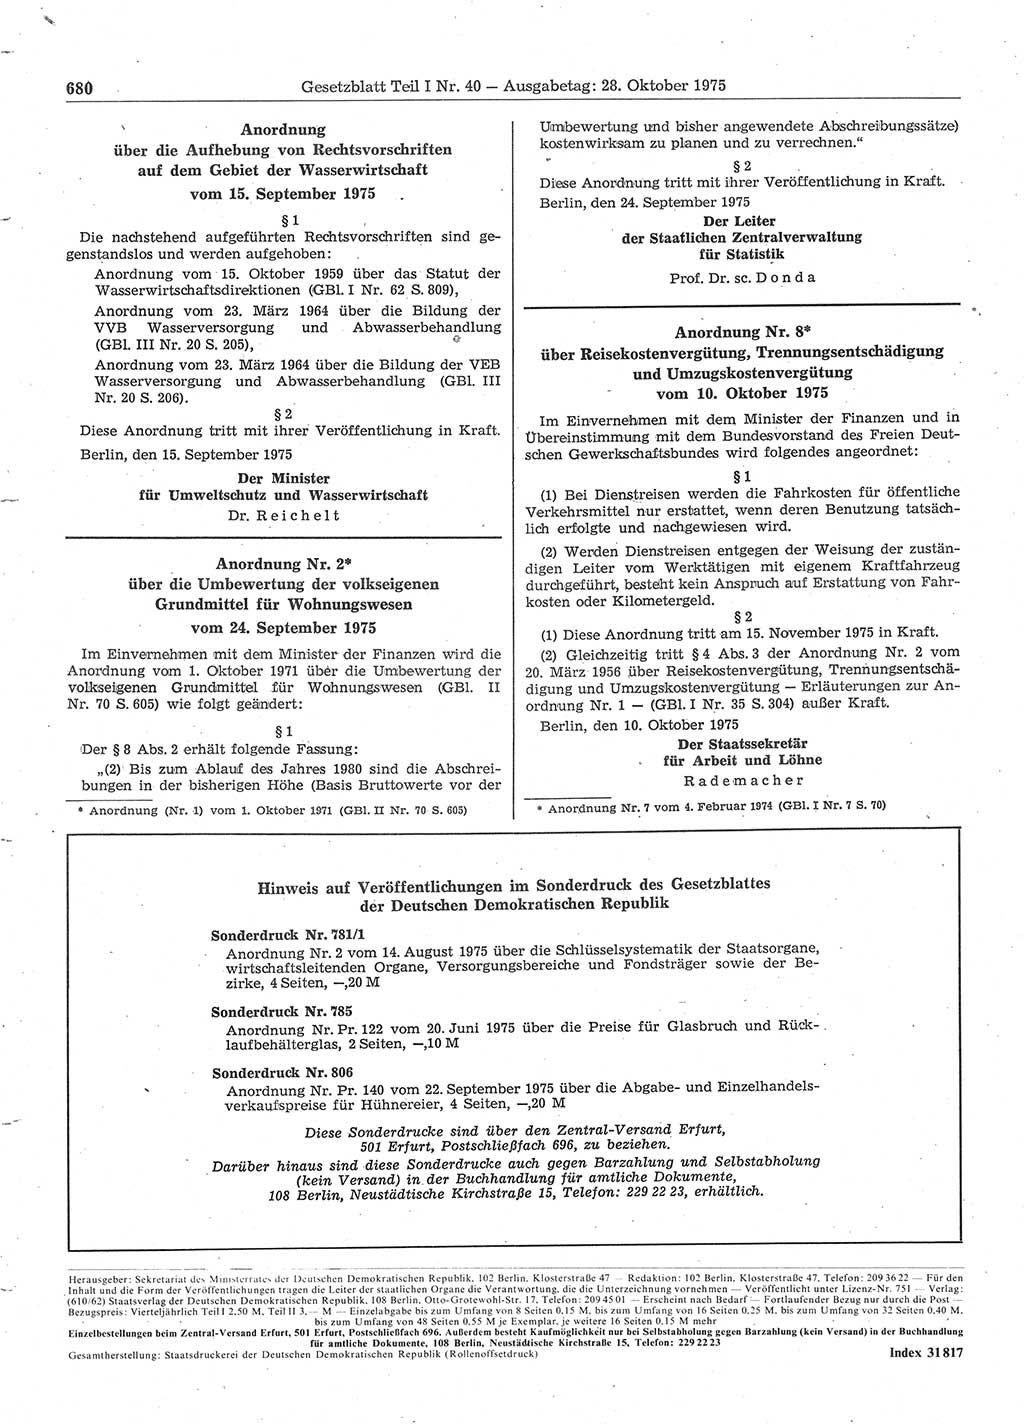 Gesetzblatt (GBl.) der Deutschen Demokratischen Republik (DDR) Teil Ⅰ 1975, Seite 680 (GBl. DDR Ⅰ 1975, S. 680)